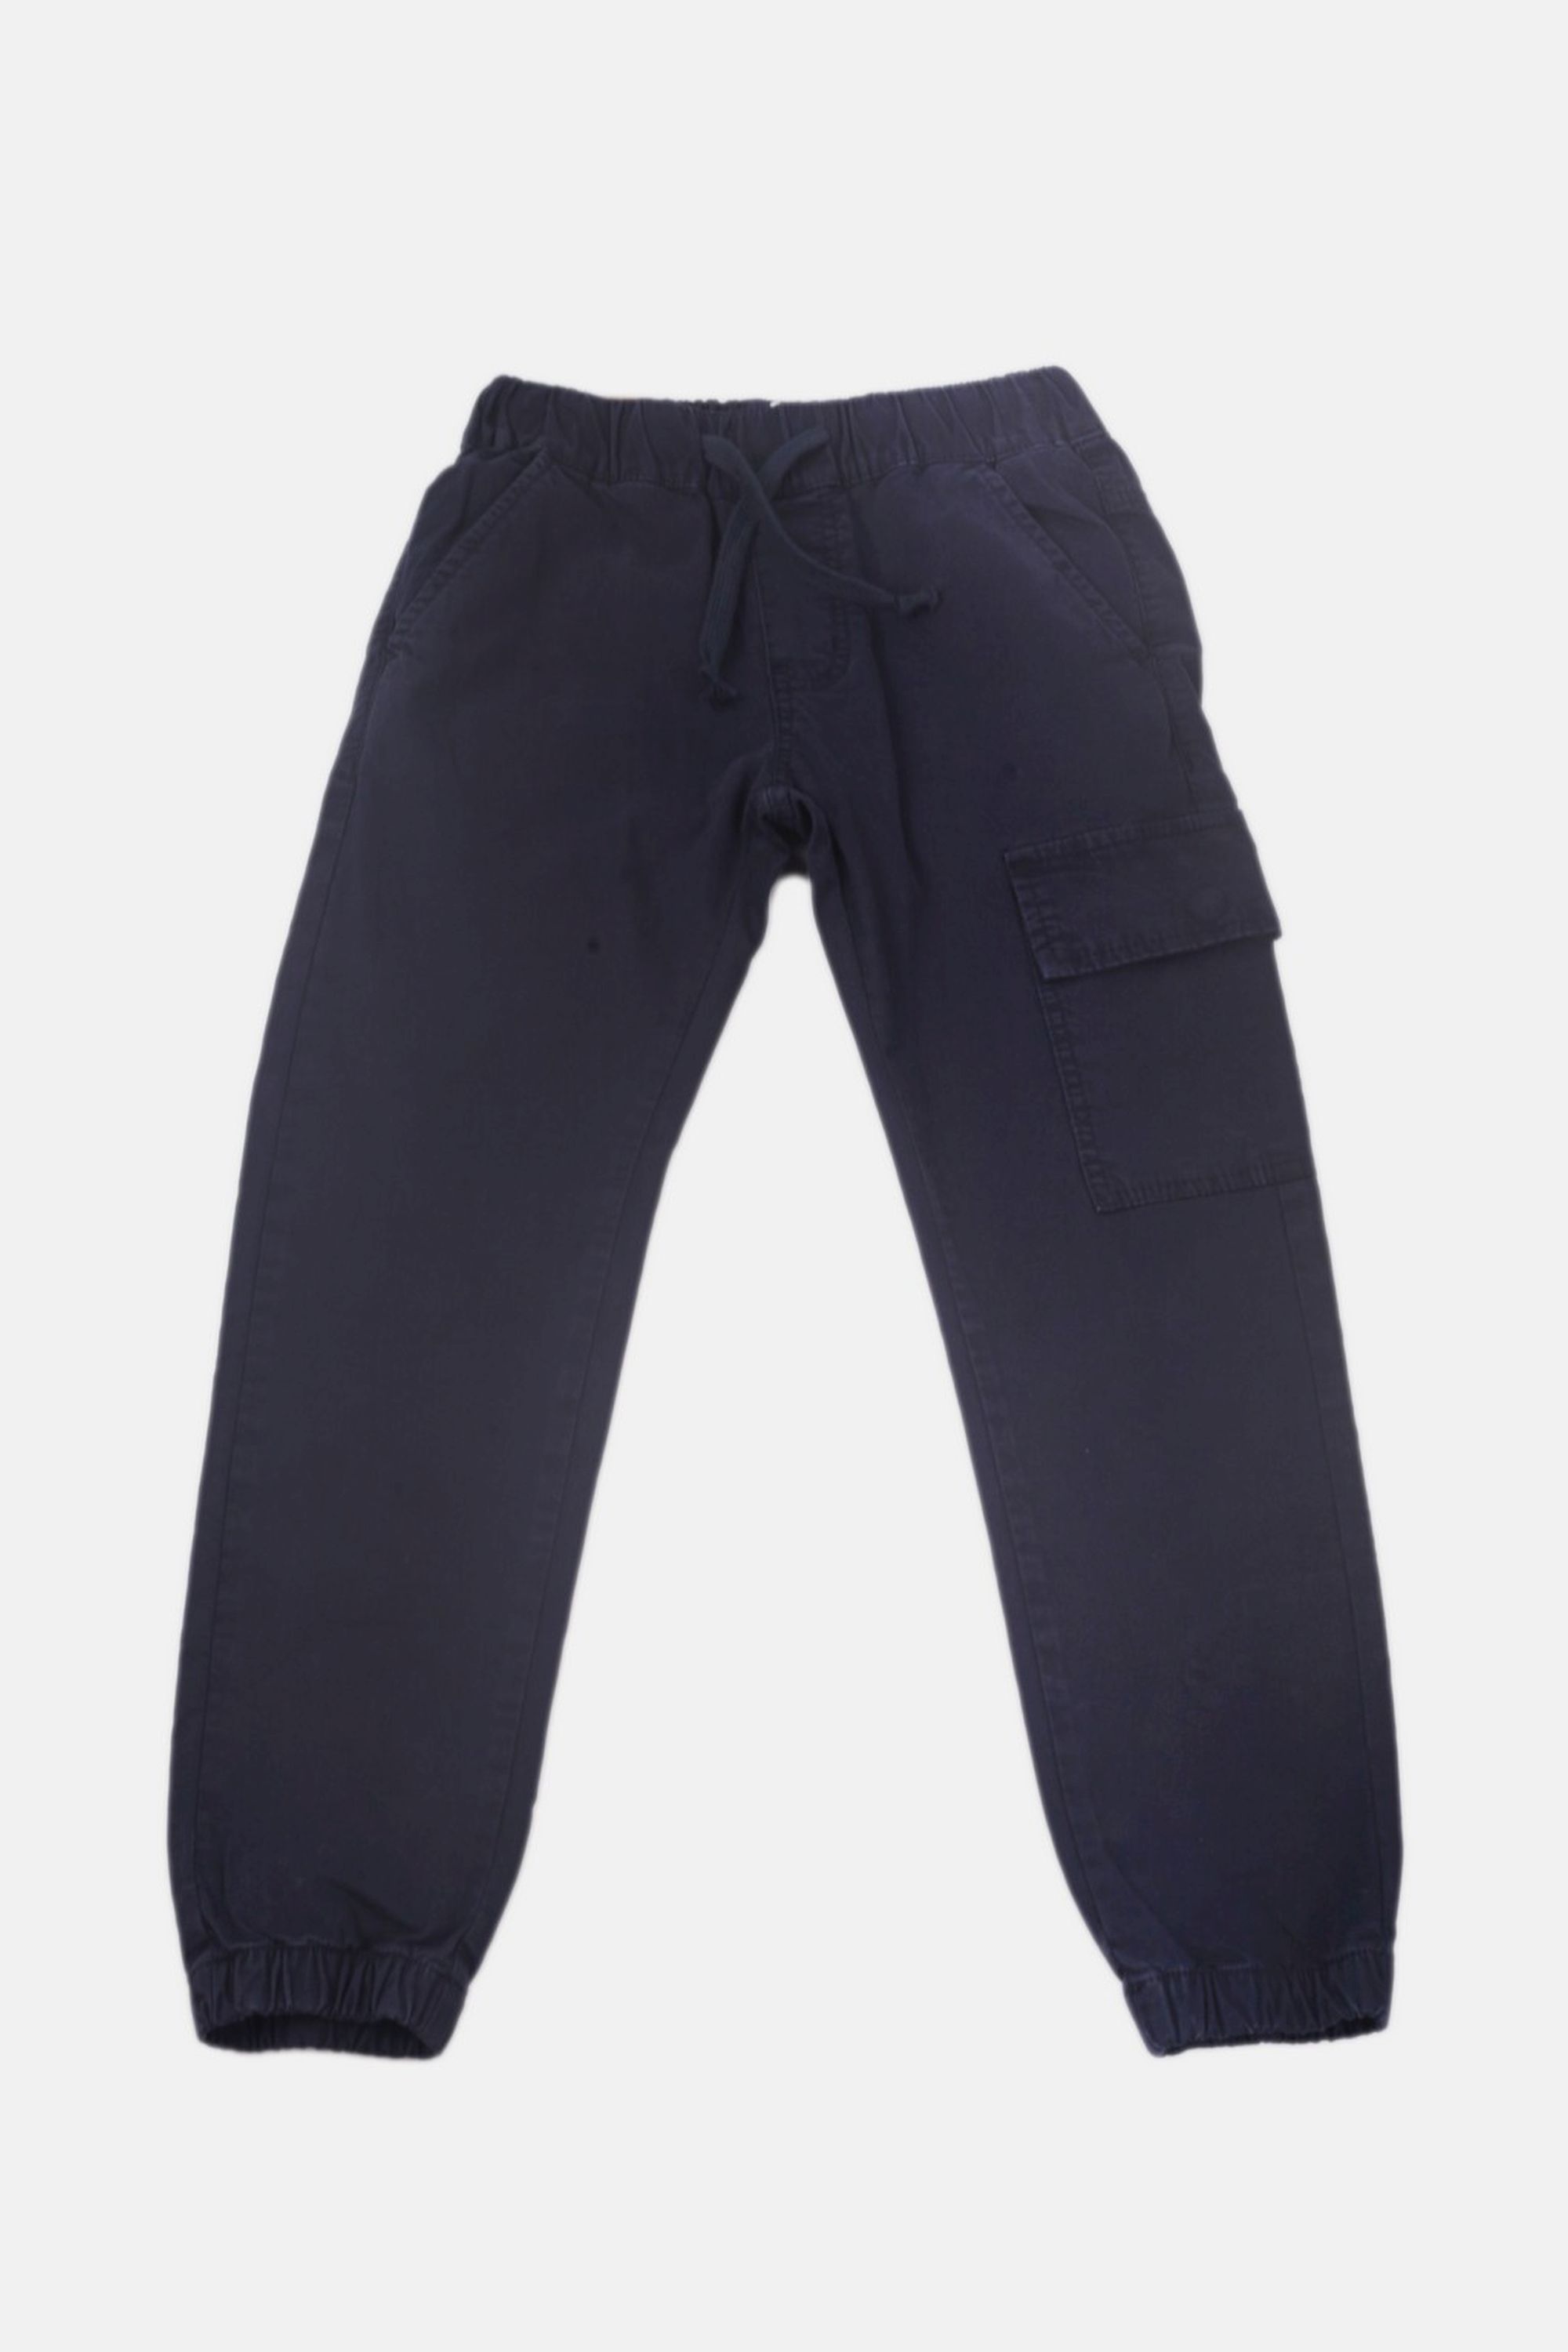 Chlapecké bavlněné kalhoty s gumou v pase/Hnědá, modrá Barva: Modrá, Velikost: vel. 4 (100/108 cm)